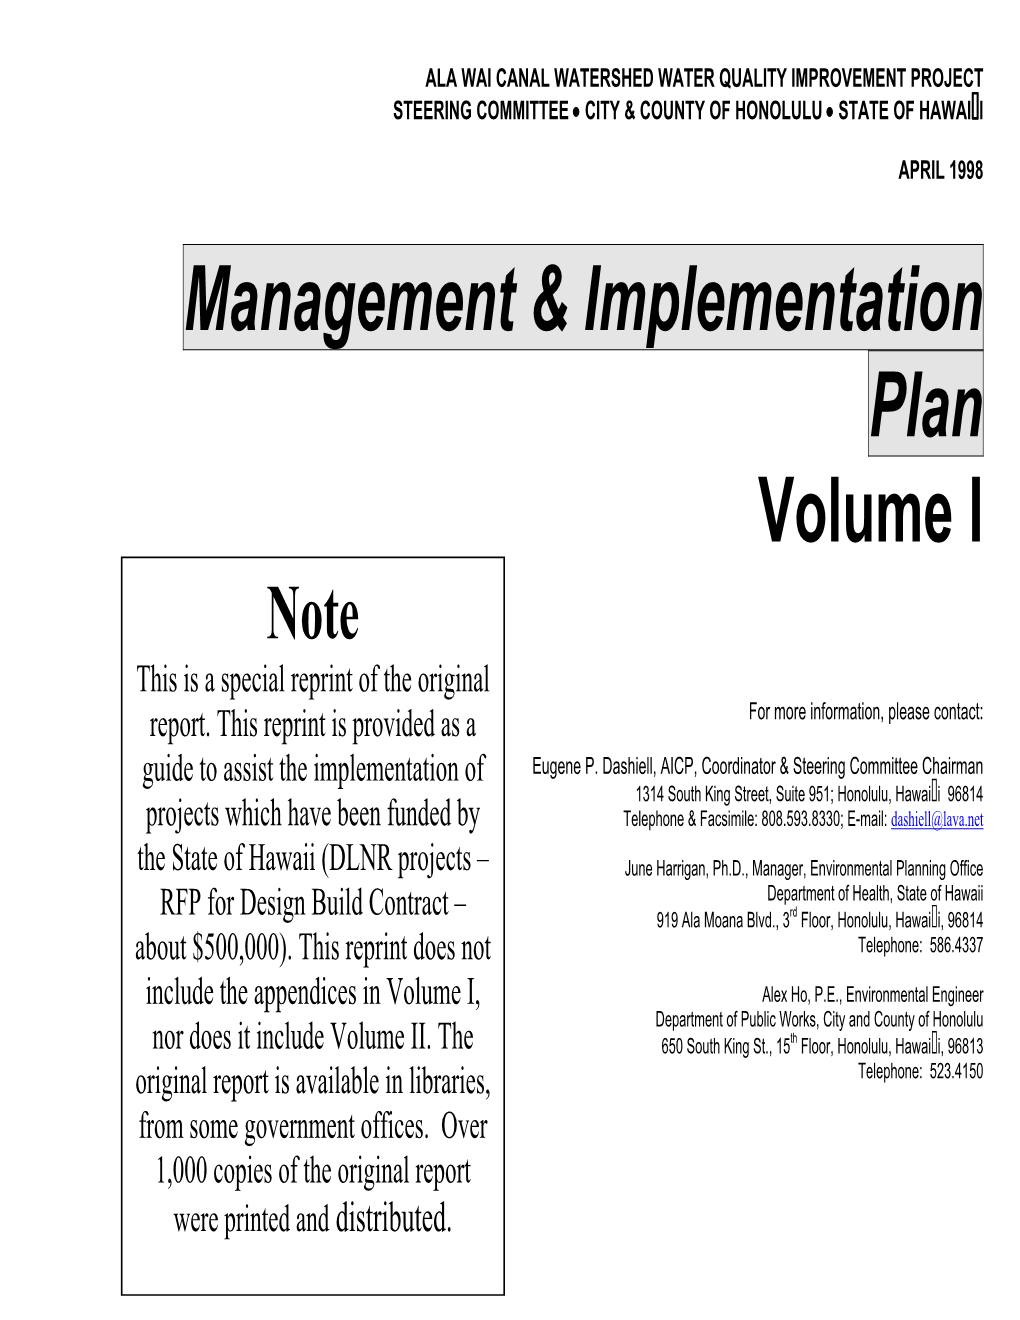 Management & Implementation Plan Volume I